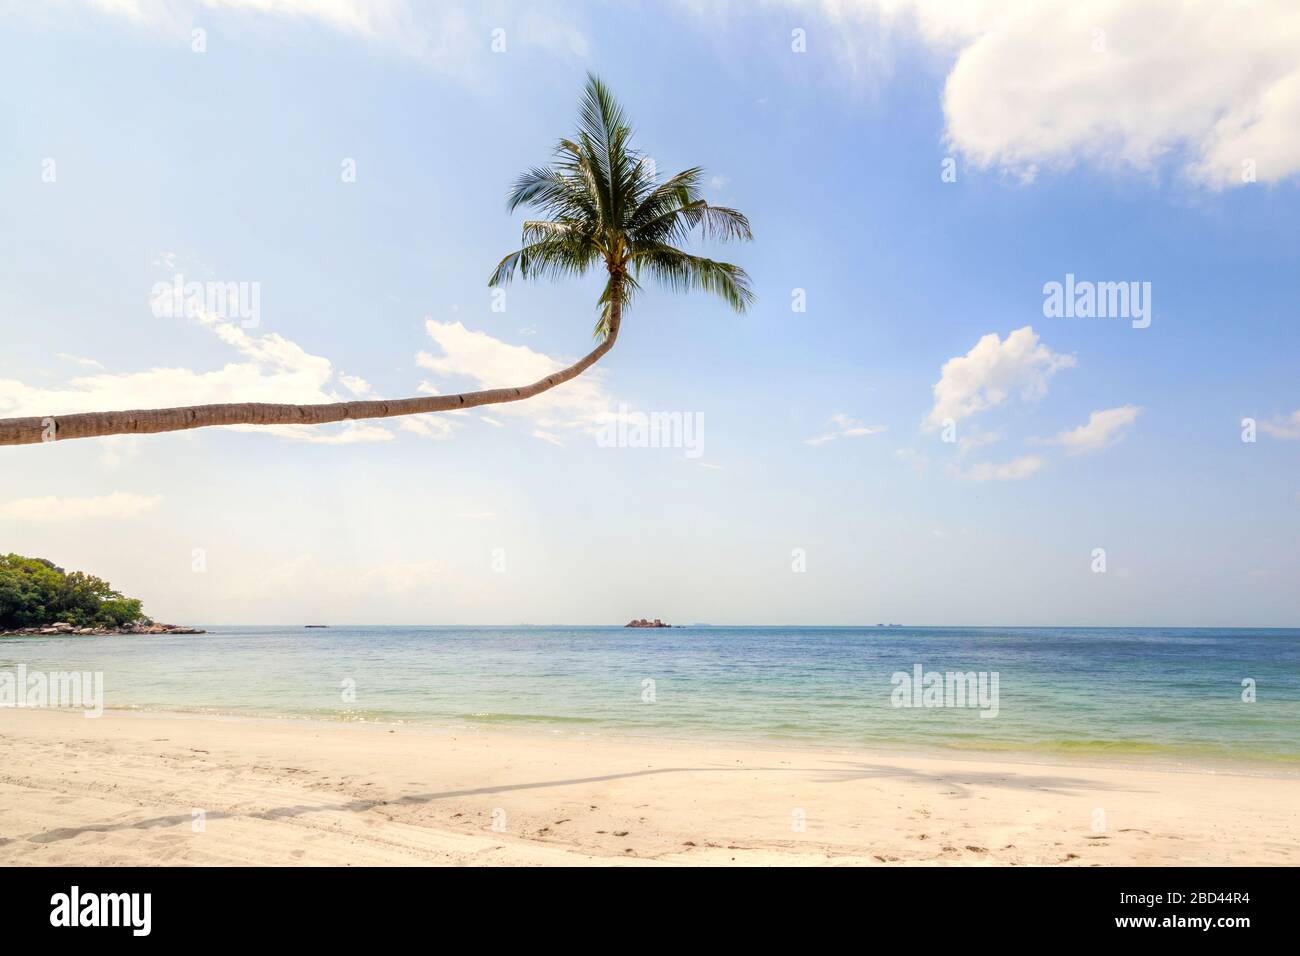 Die einzige Kokospalme biegt sich an einem tropischen Strand auf der Insel Bintan in Indonesien zum Meer hin ab. Stockfoto